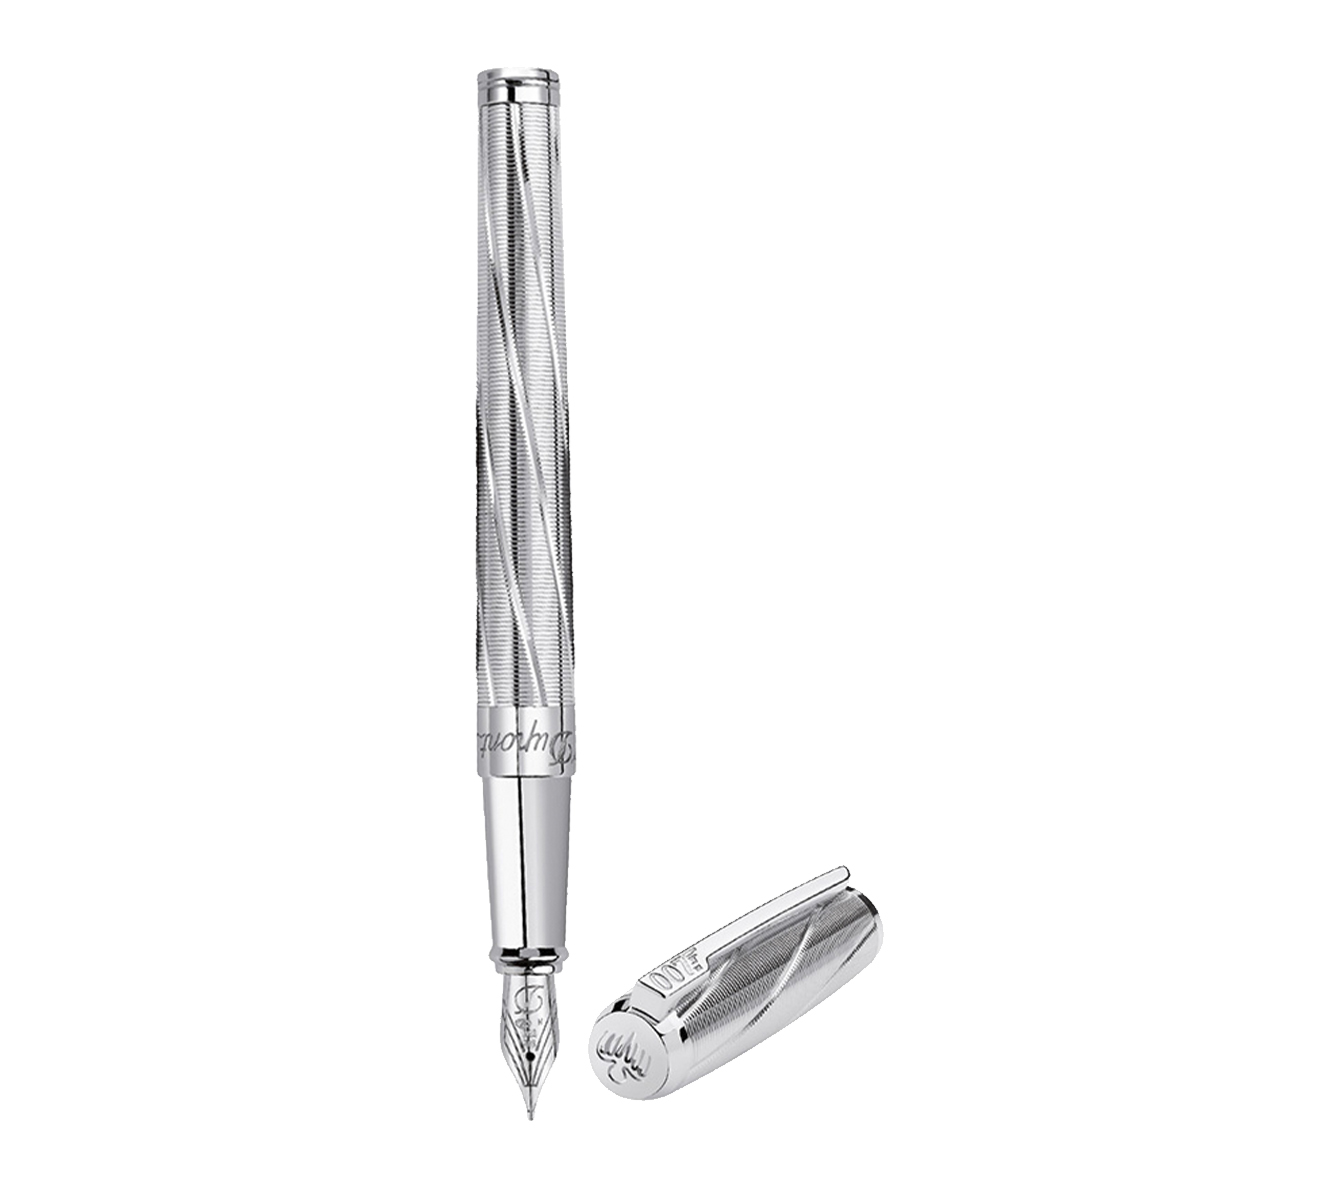 Перьевая ручка James Bond 007 S.T. Dupont Limited Edition 141033 - фото 1 – Mercury